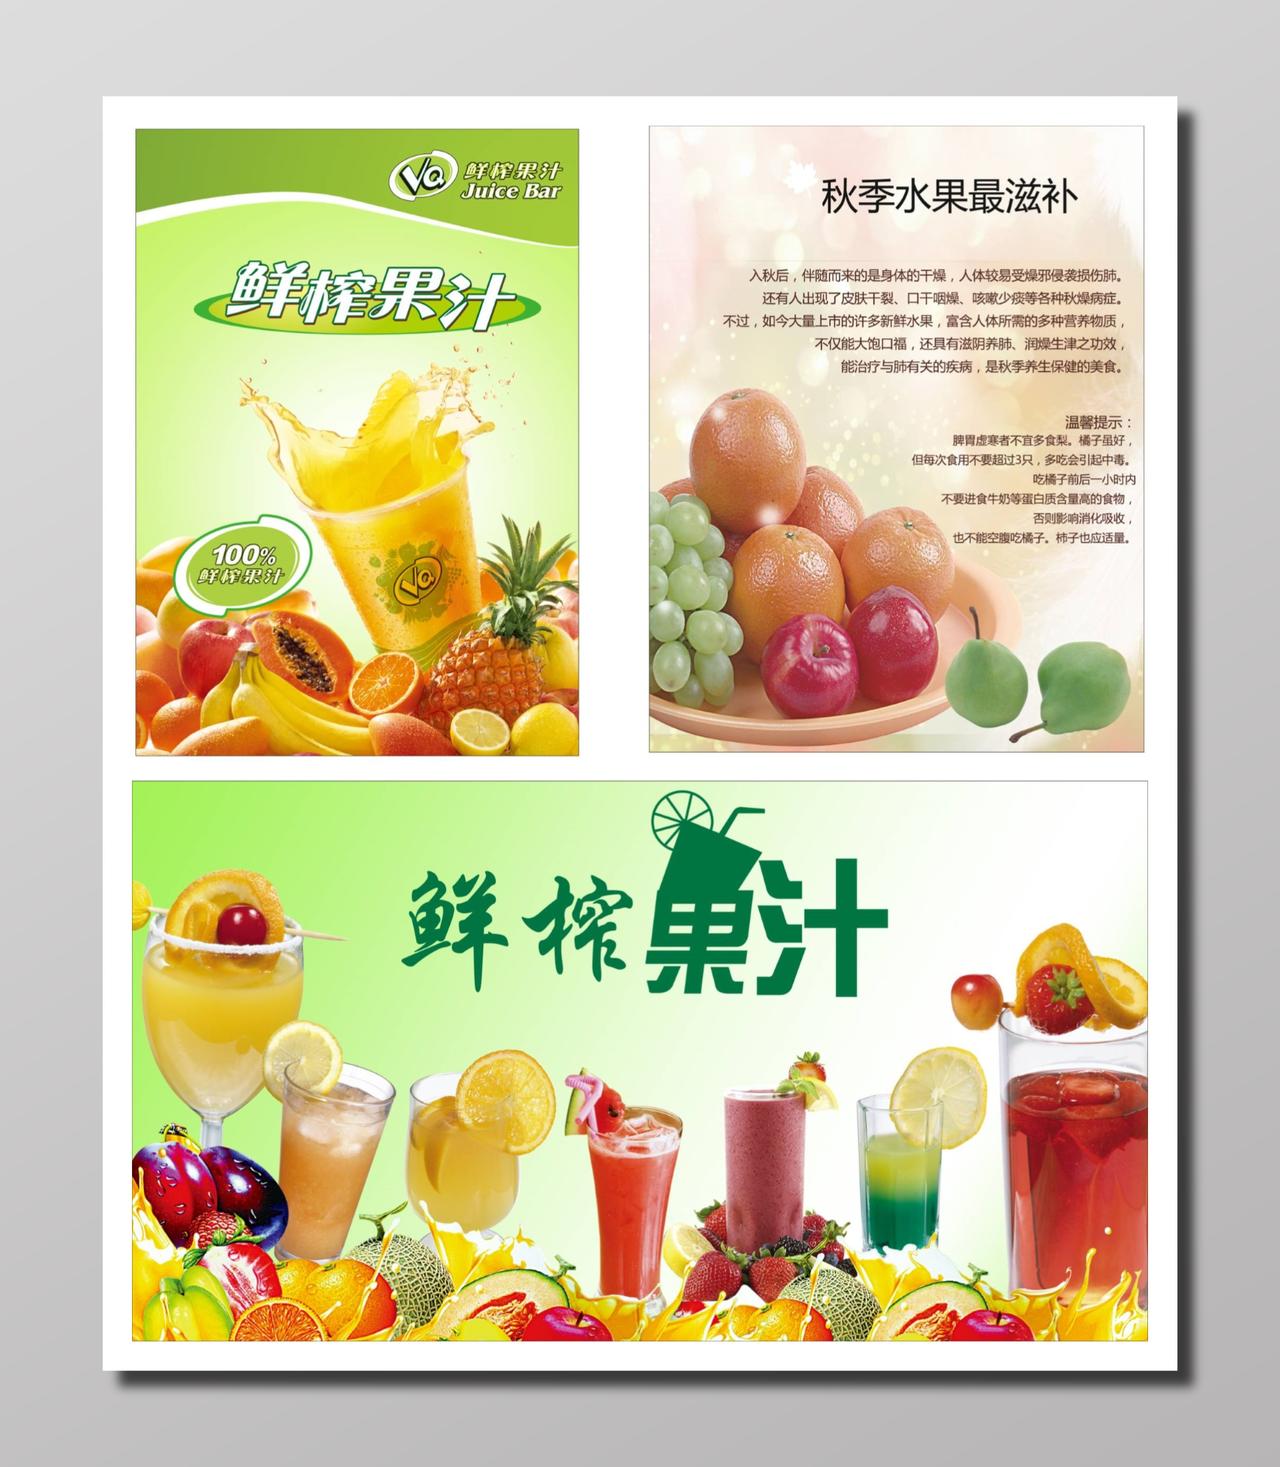 饮吧鲜榨果汁饮料饮品海报